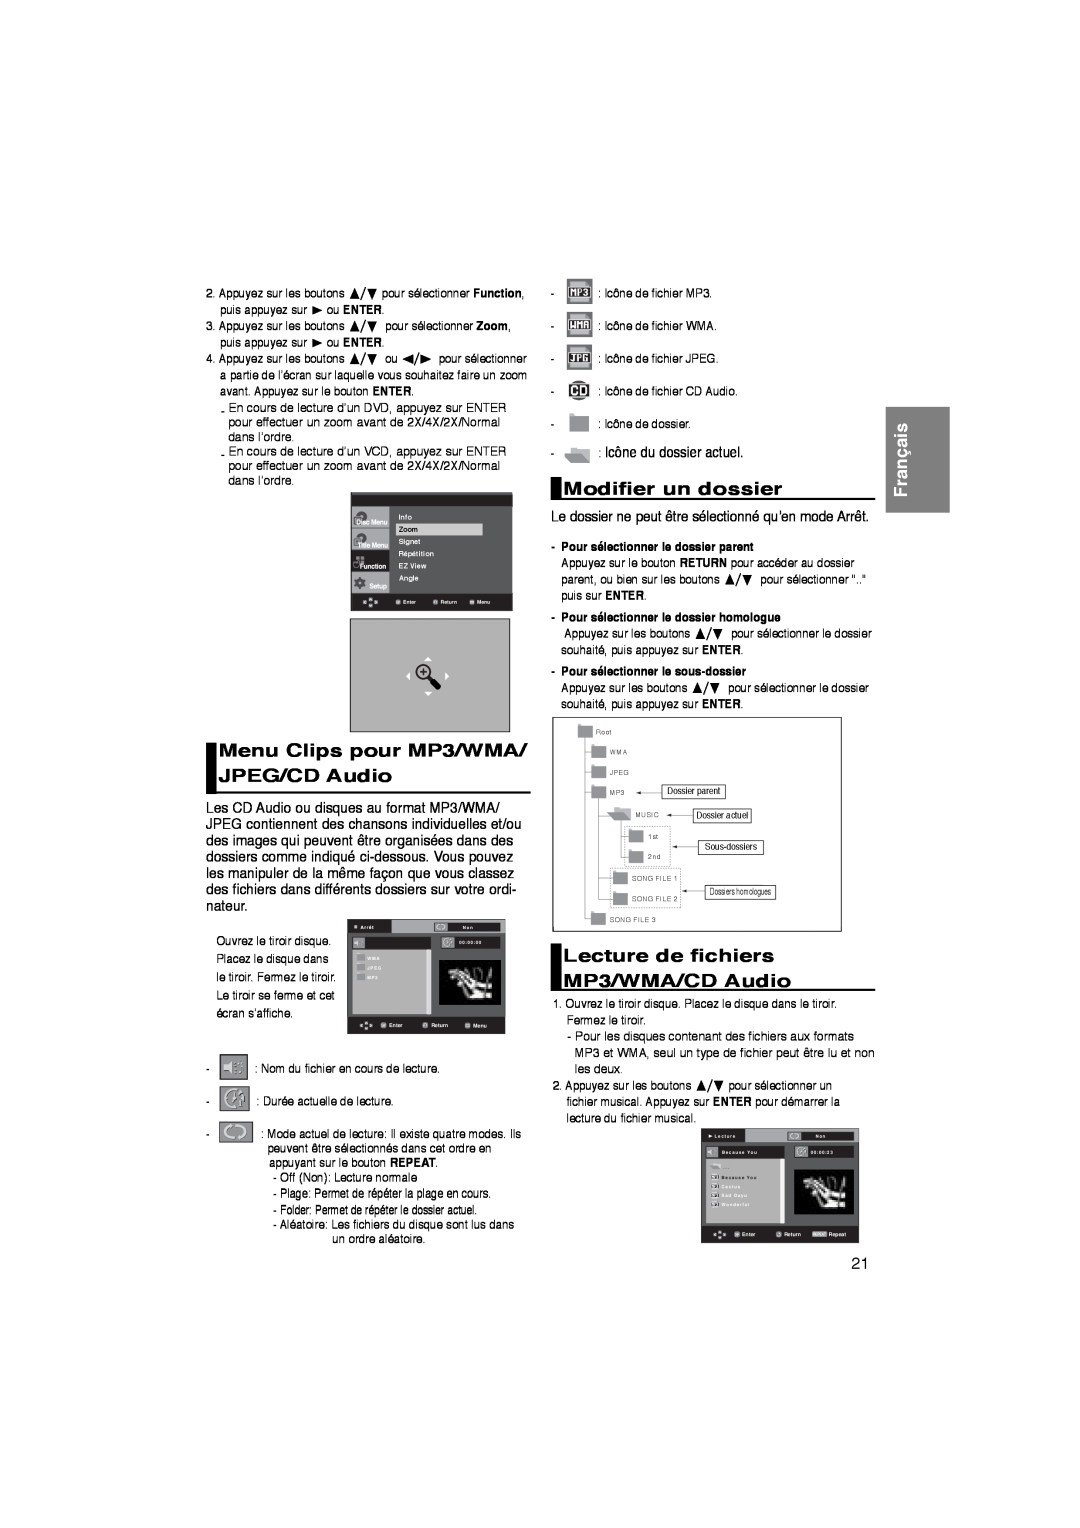 Samsung DVD-P260K/AFR Menu Clips pour MP3/WMA/ JPEG/CD Audio, Modifier un dossier, Lecture de fichiers MP3/WMA/CD Audio 